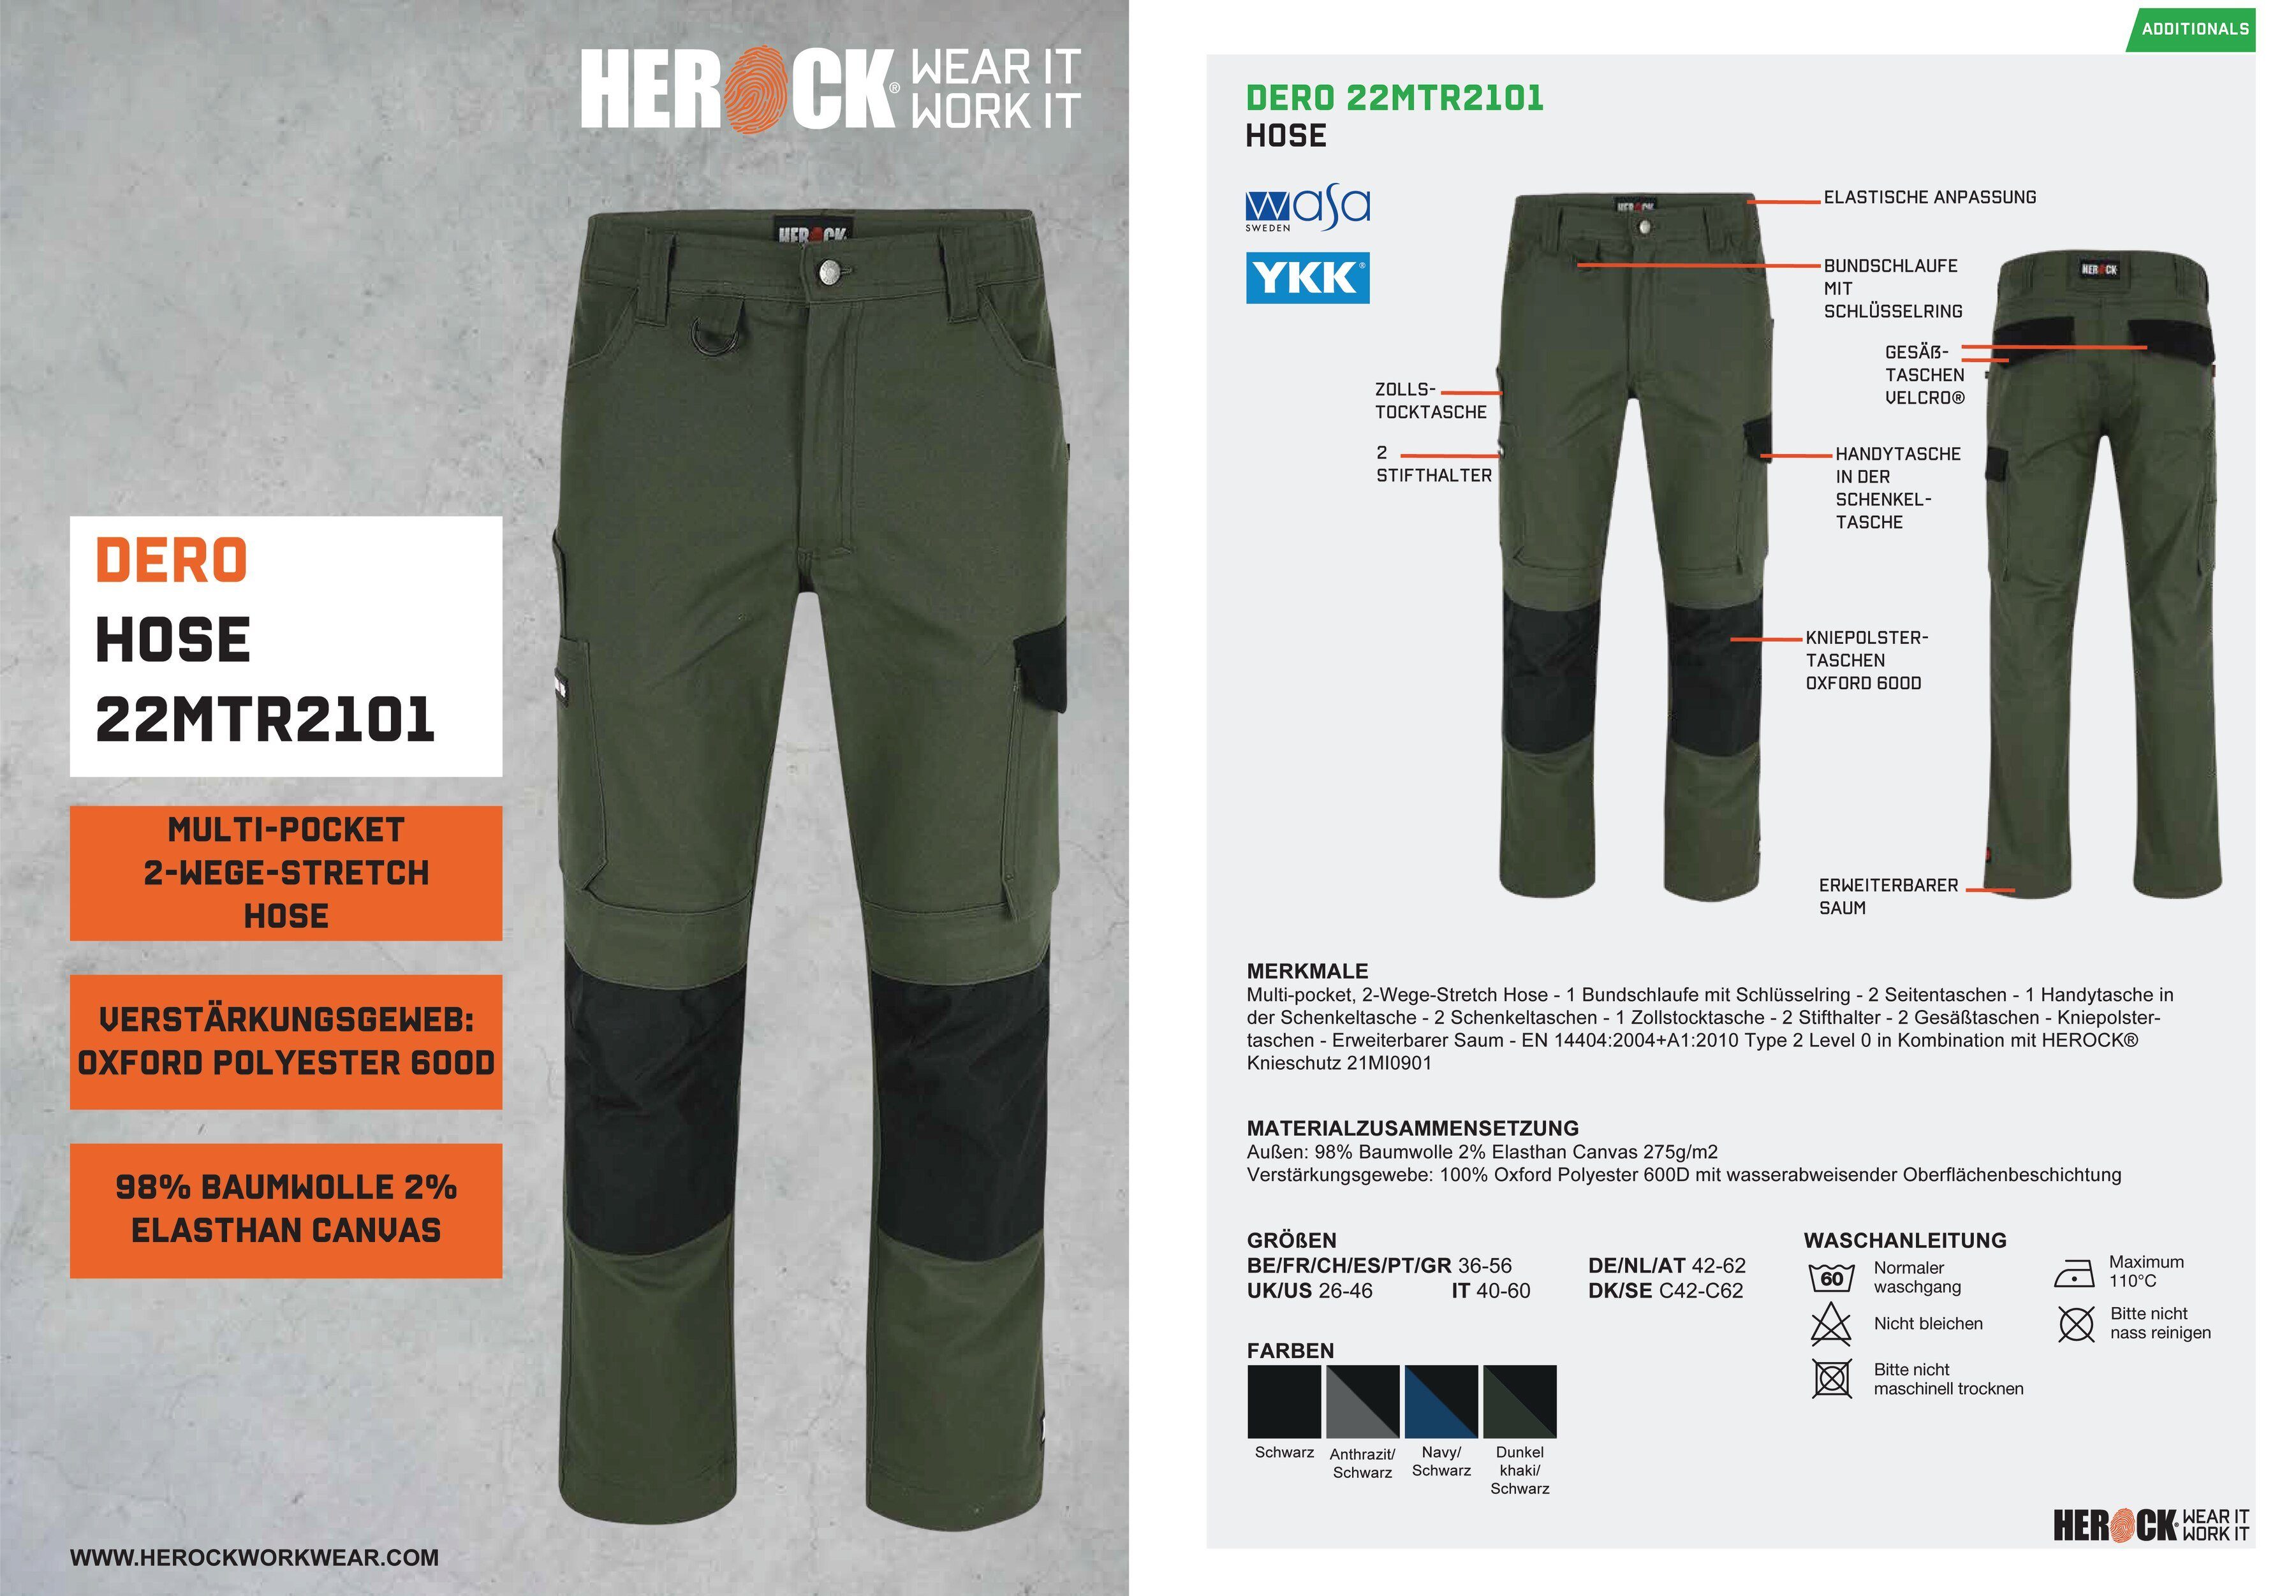 2-Wege-Stretch, Fit Multi-Pocket, wasserabweisend Arbeitshose Herock khaki Passform, Slim DERO